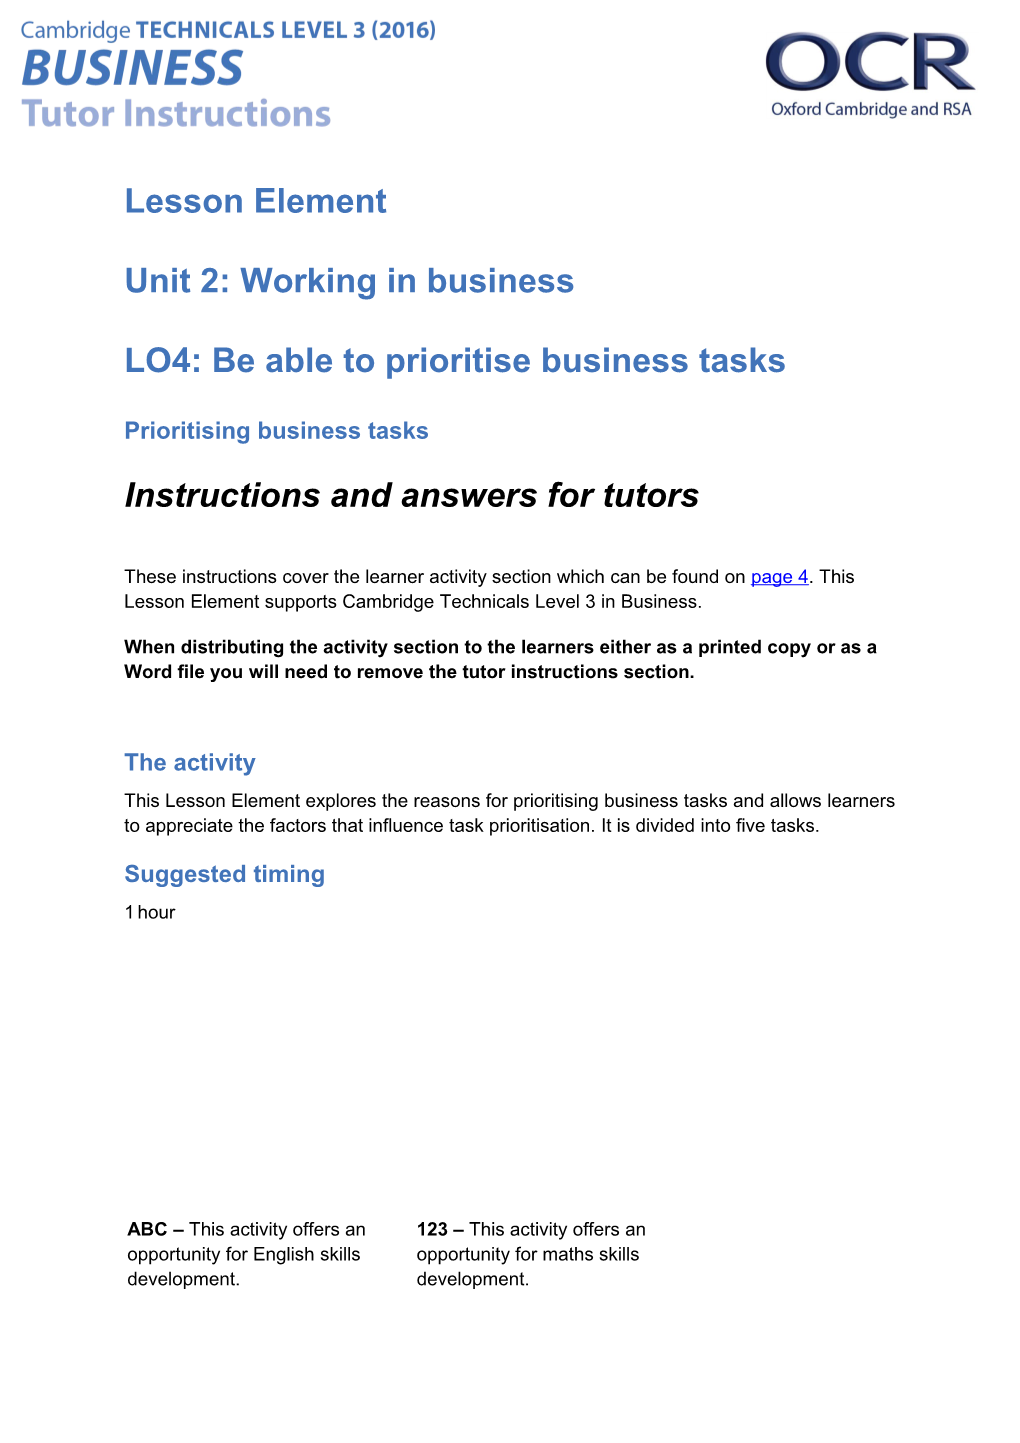 Cambridge Technicals Level 3 Business U02 Lesson Element 3